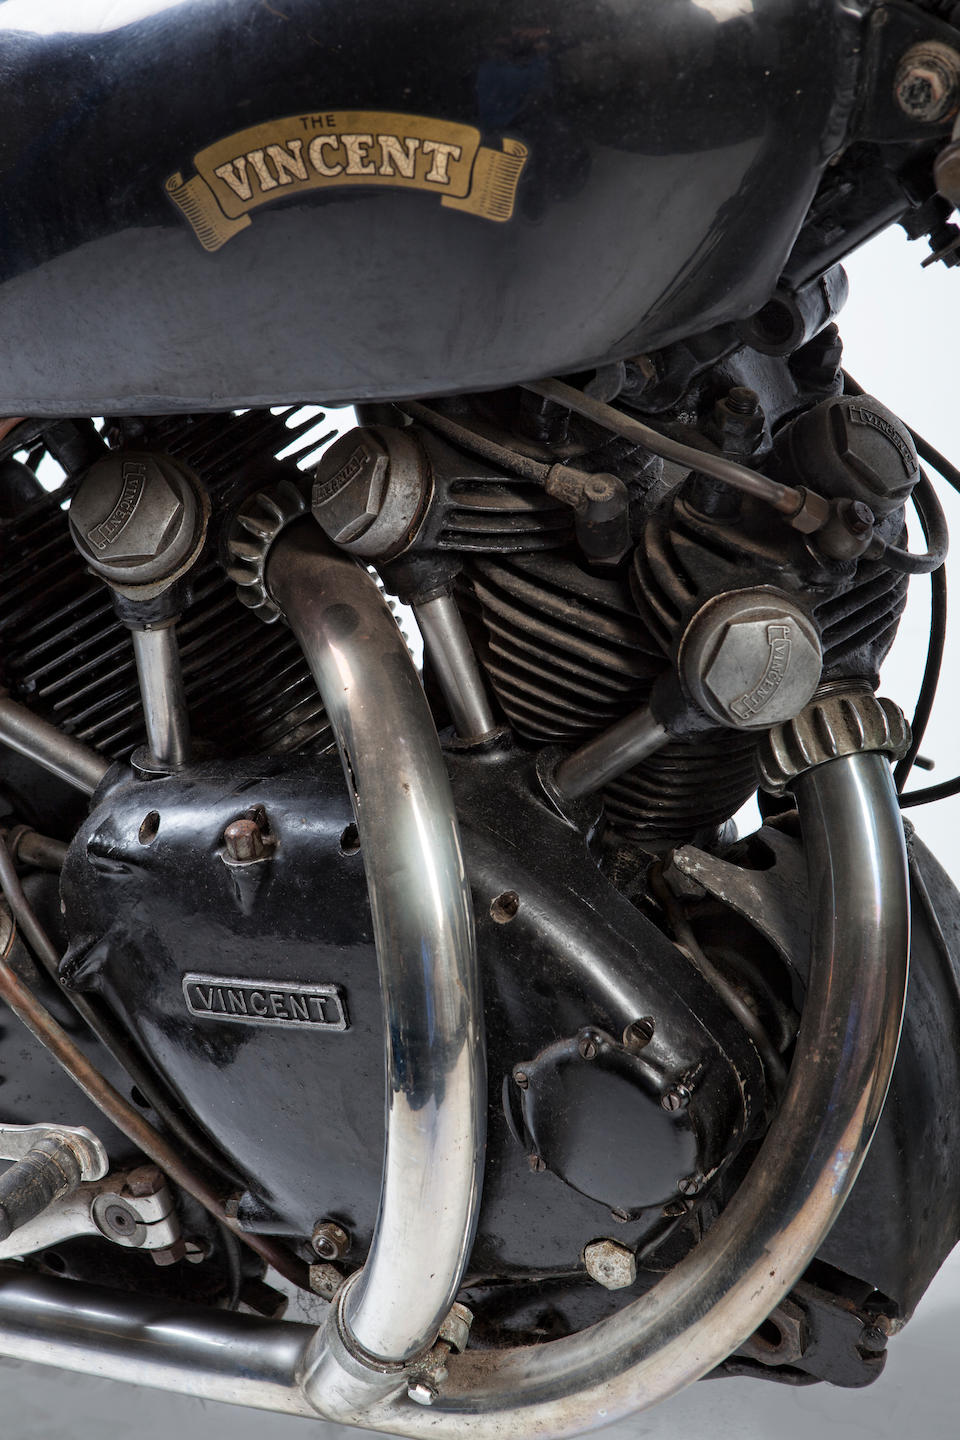 1951 Vincent 998cc Series-C Black Shadow Frame no. RC8064B Engine no. F10AB/1B/6164